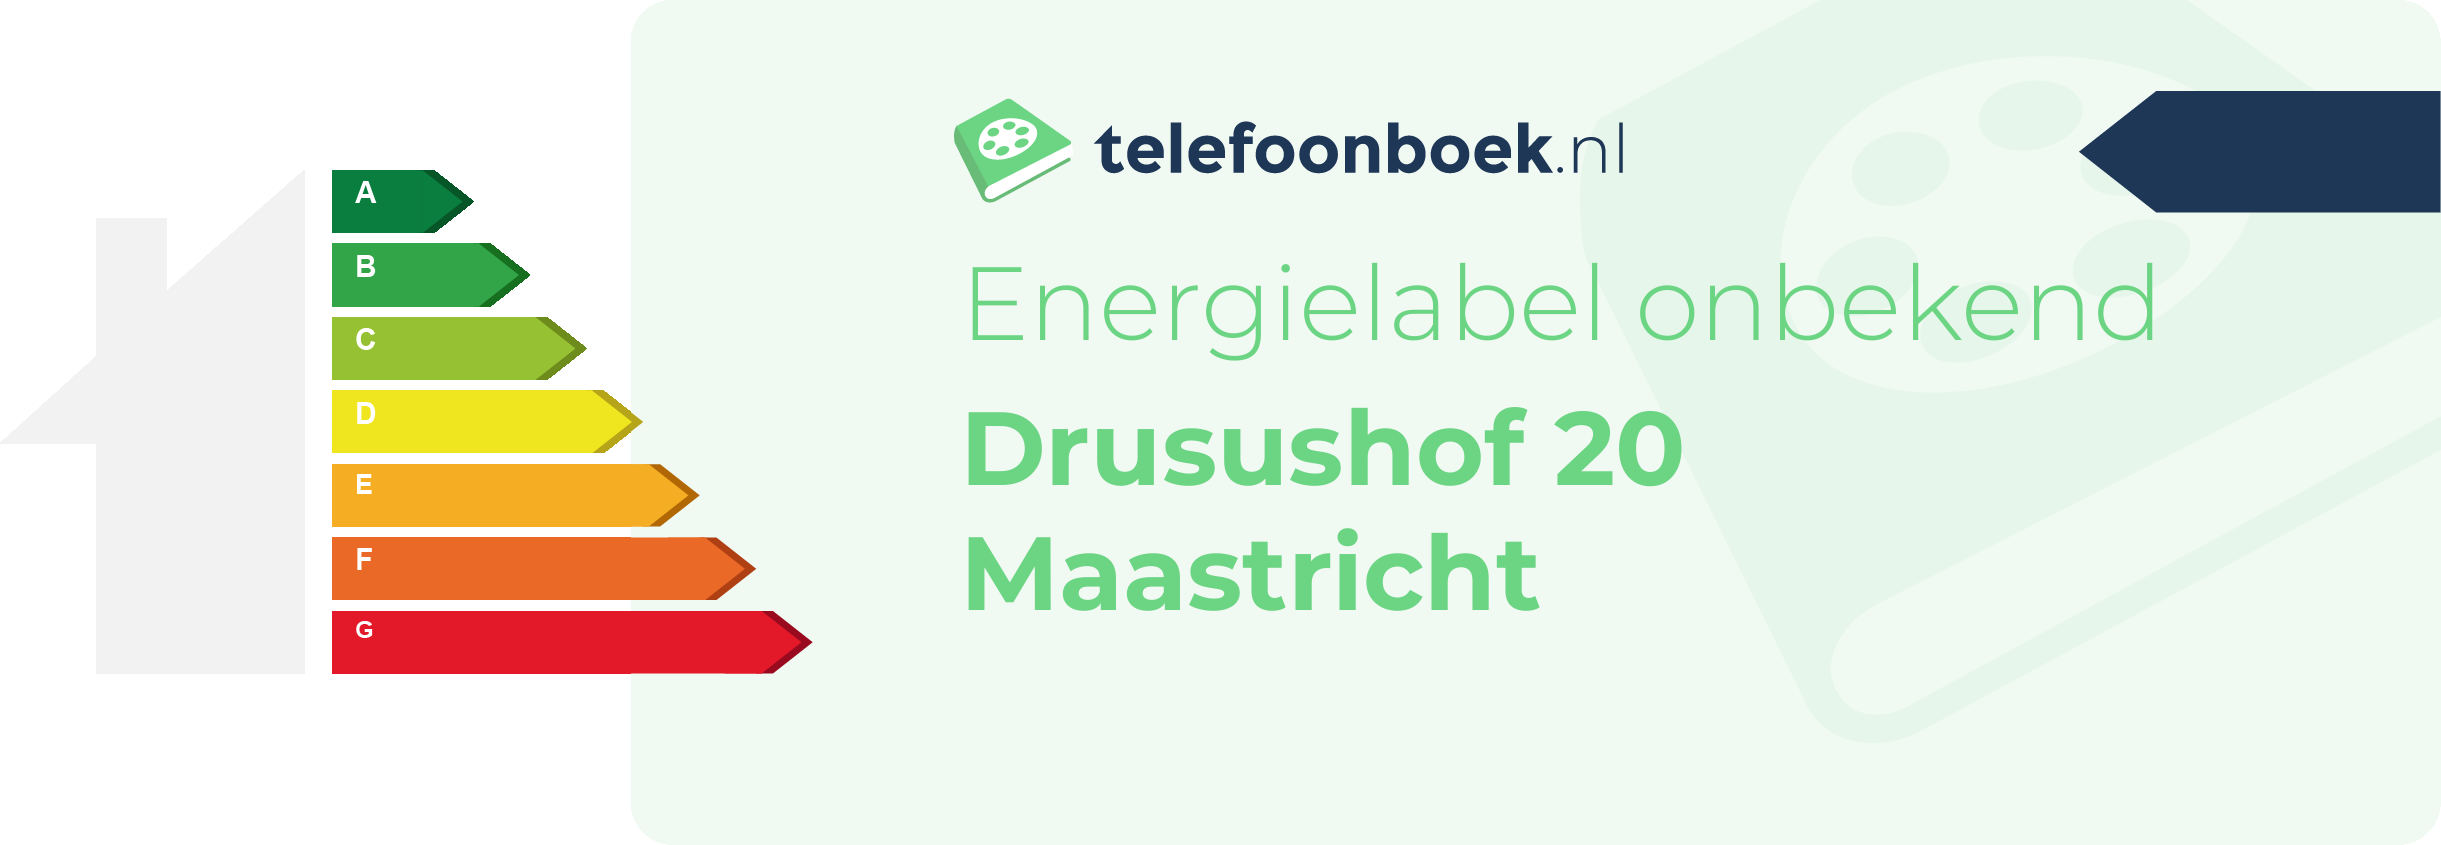 Energielabel Drusushof 20 Maastricht